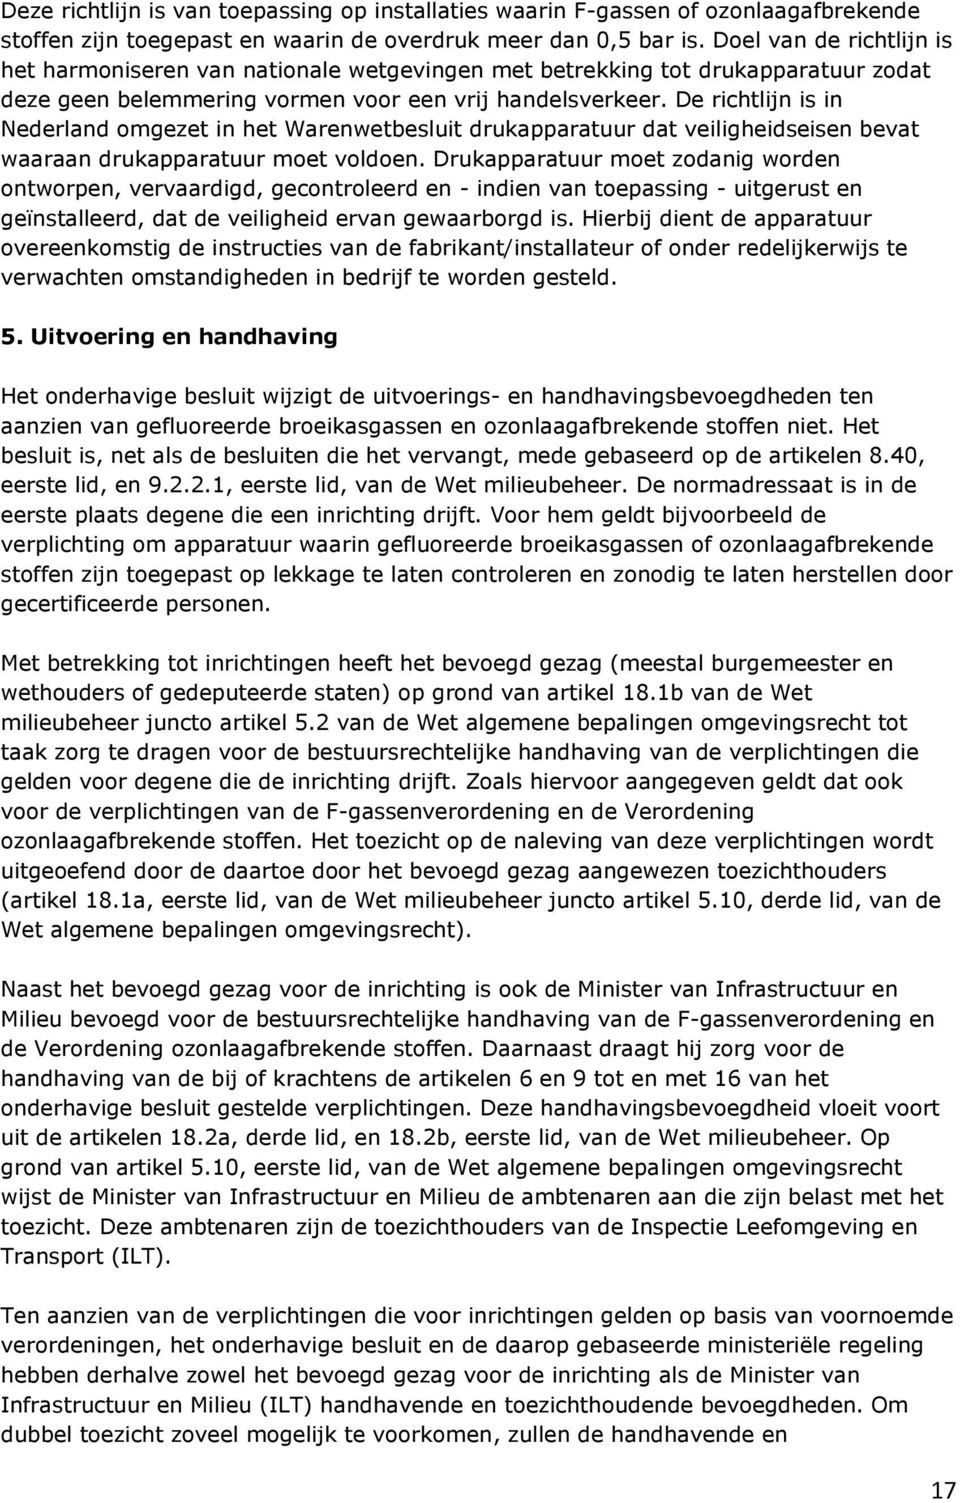 De richtlijn is in Nederland omgezet in het Warenwetbesluit drukapparatuur dat veiligheidseisen bevat waaraan drukapparatuur moet voldoen.